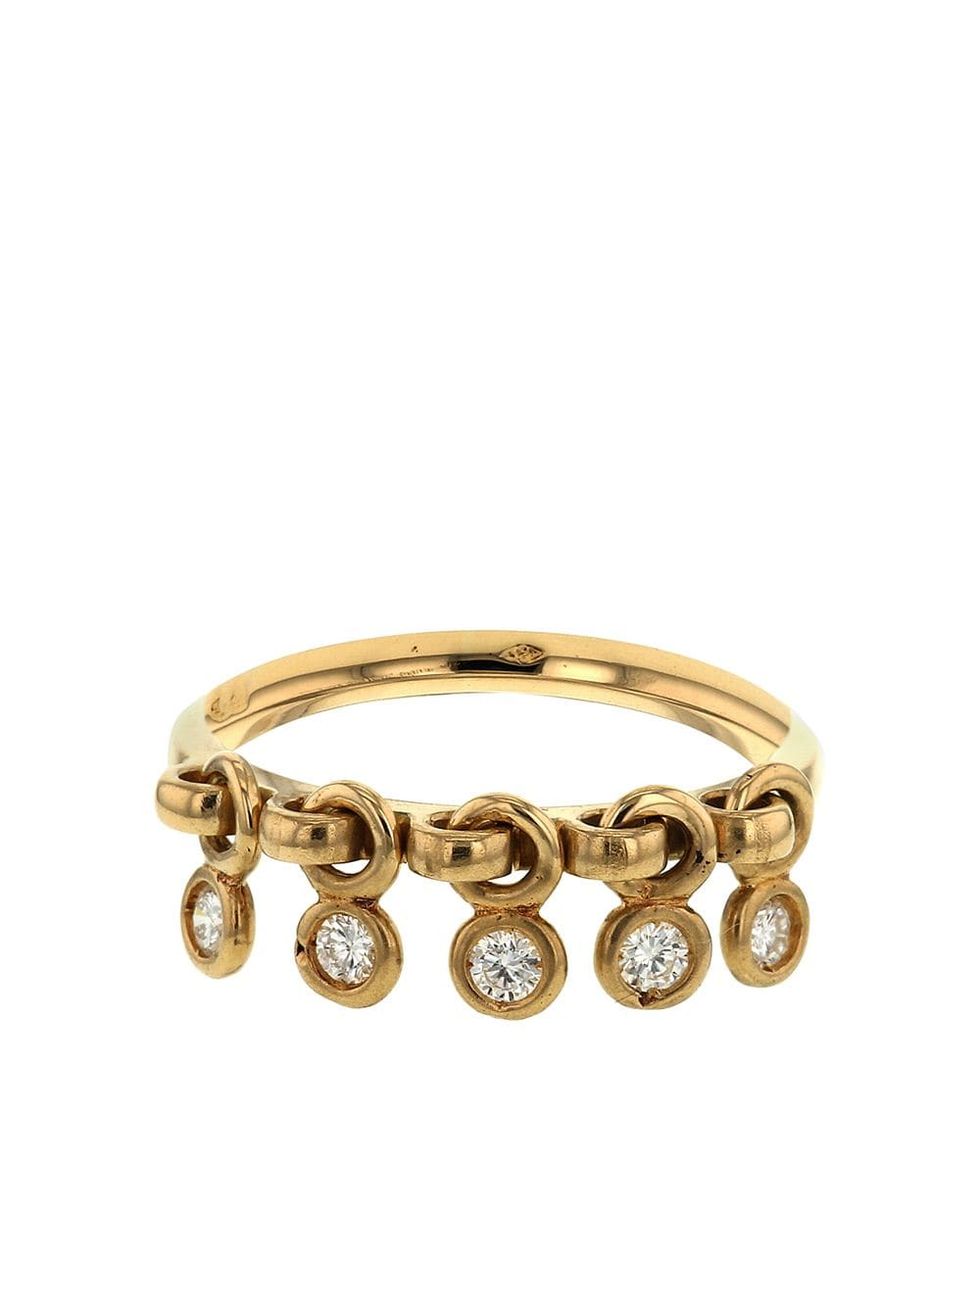 L'anello sottile in oro di Christian Dior